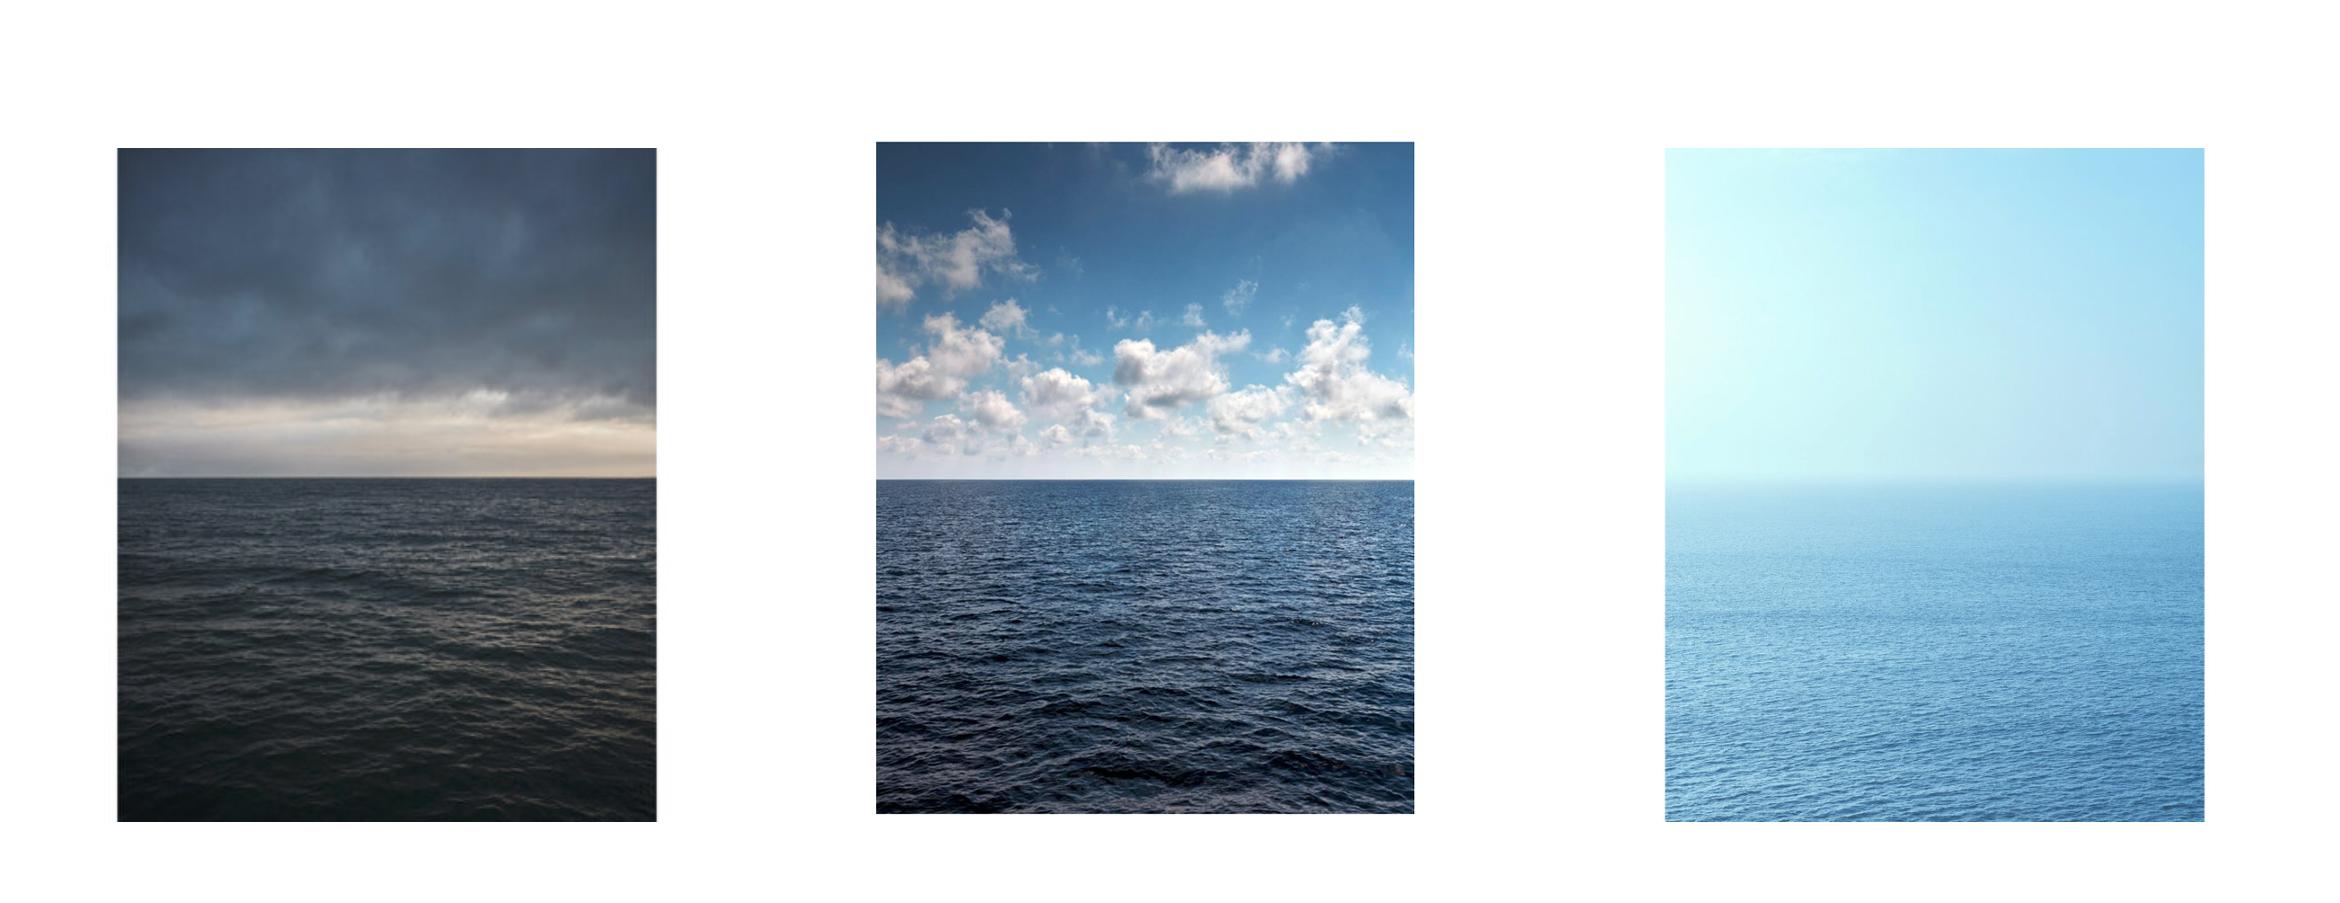 Meereslandschaft VI – Großformatfotografie mit Wolkenlandschaftshorizont und endlosem Meer (Blau), Landscape Photograph, von Frank Schott